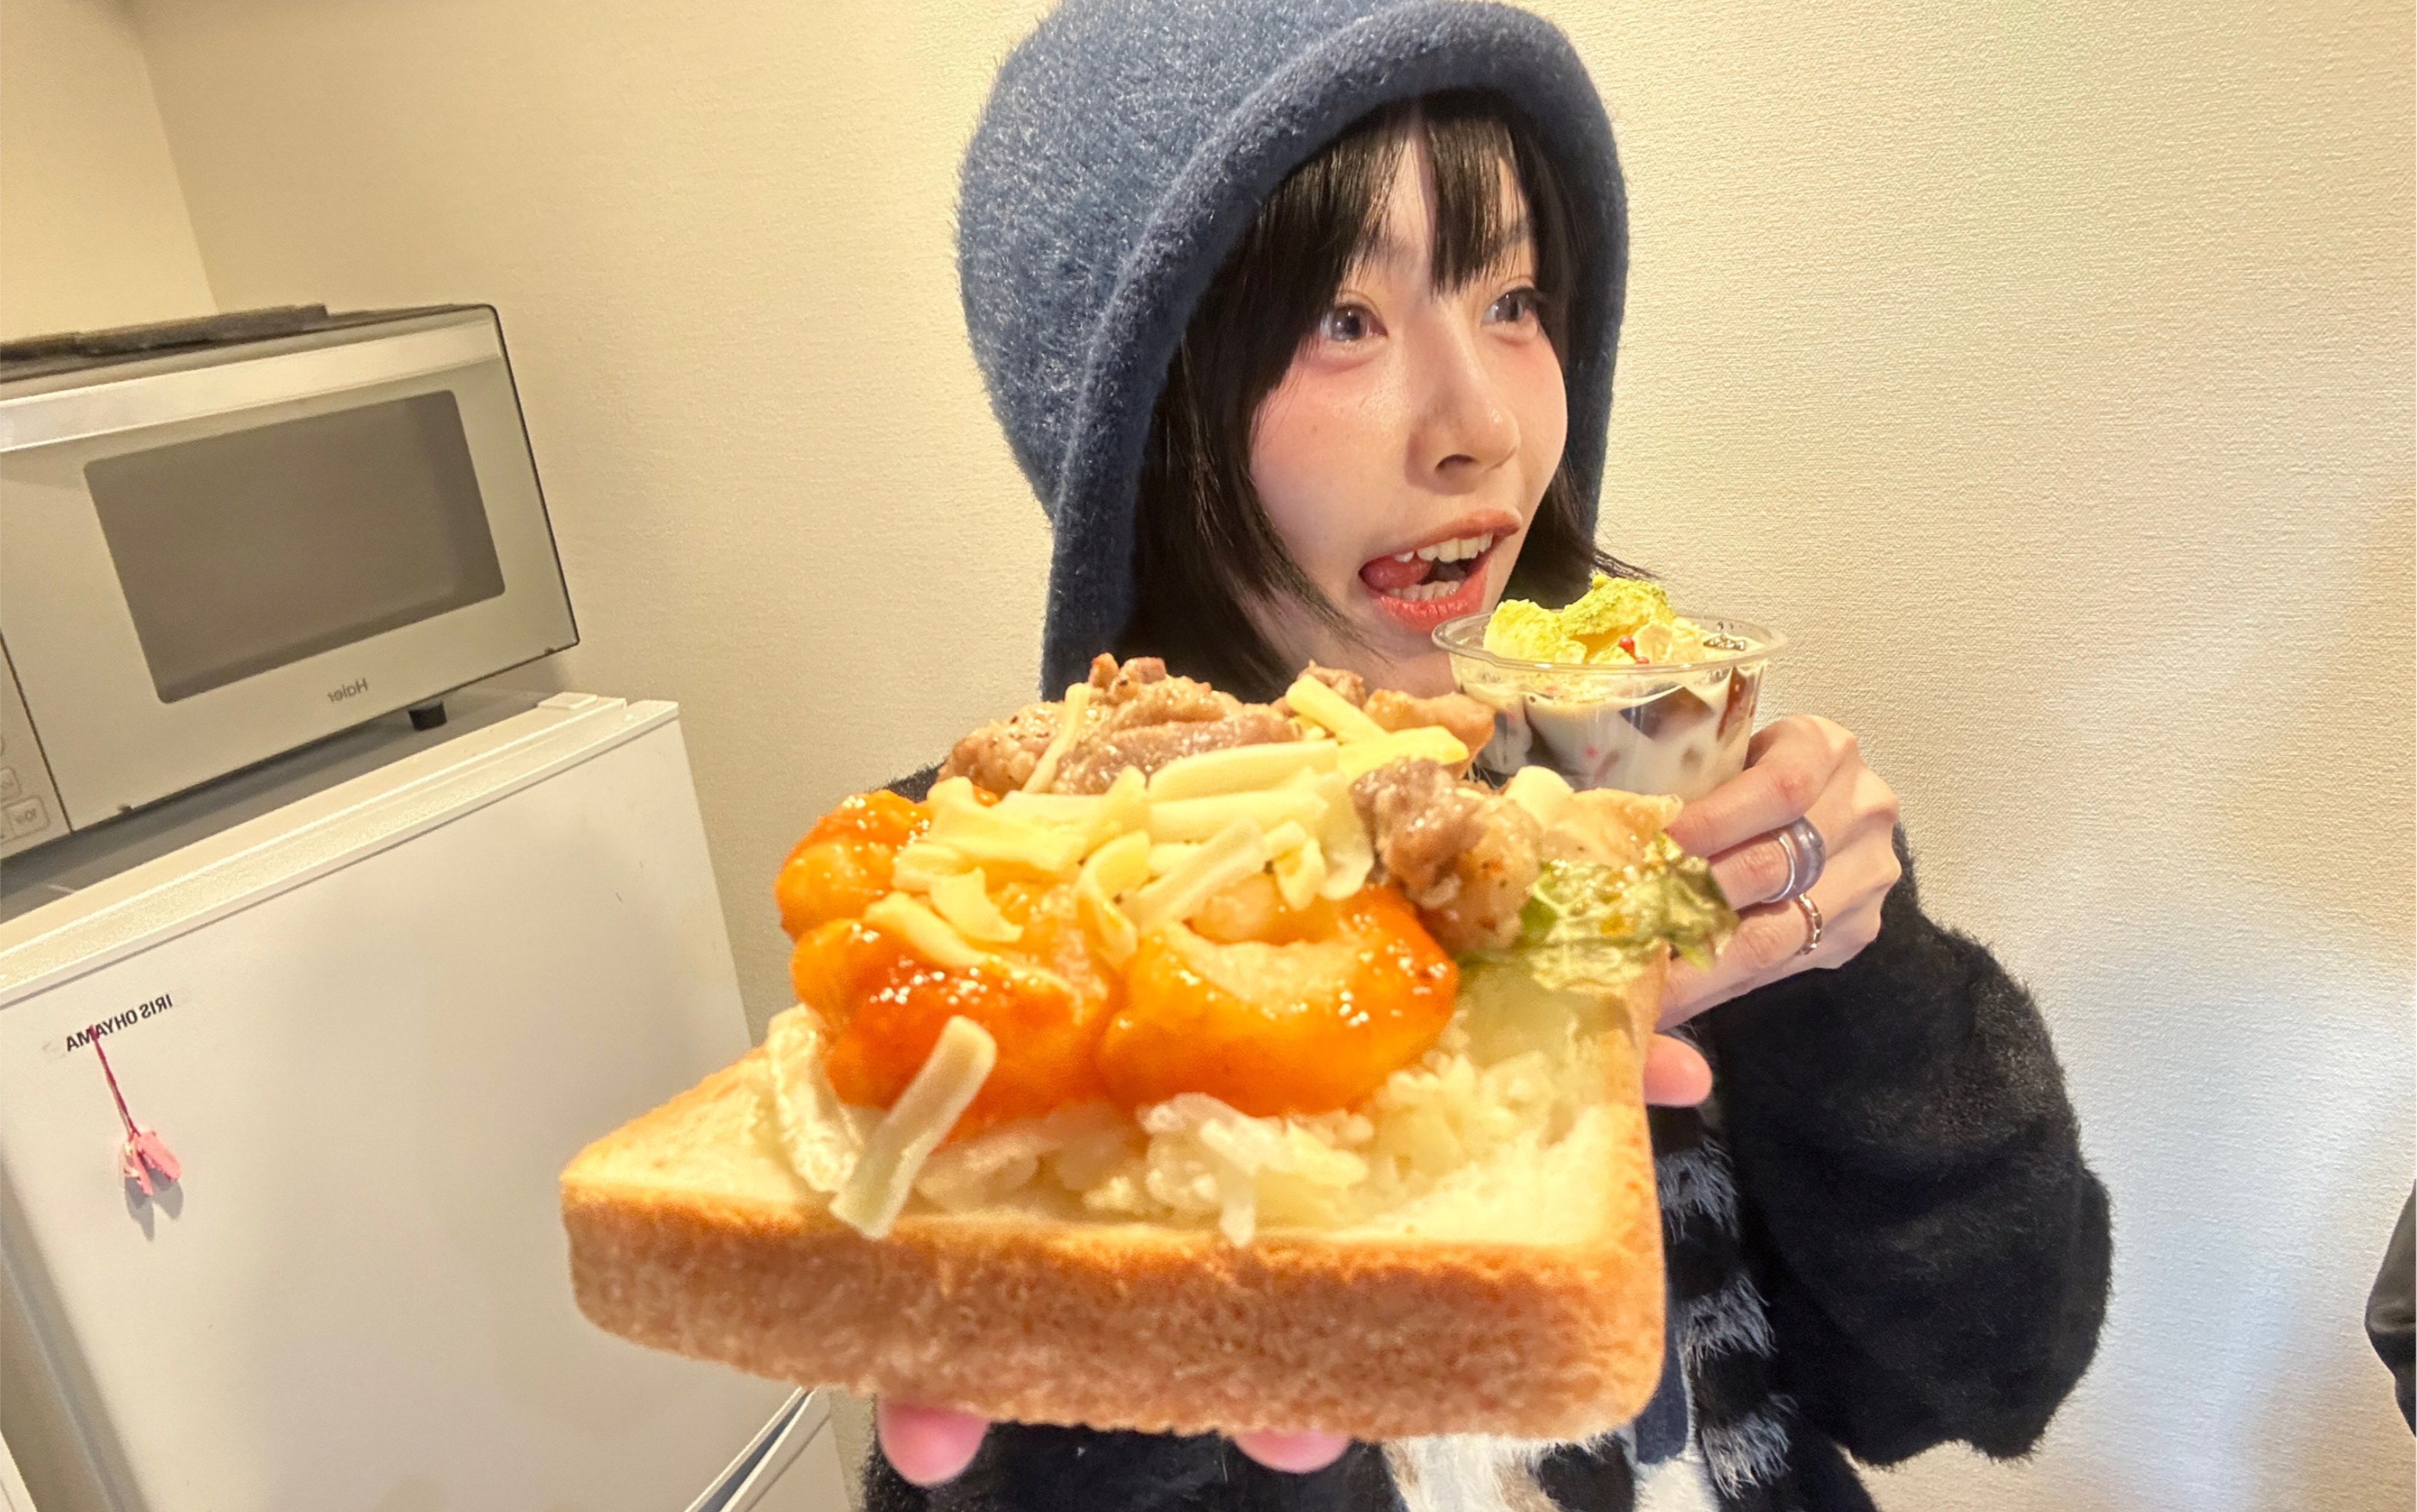 又是吃便利店的一天｜据说最近日本流行面包加米饭…竟然口感很特别